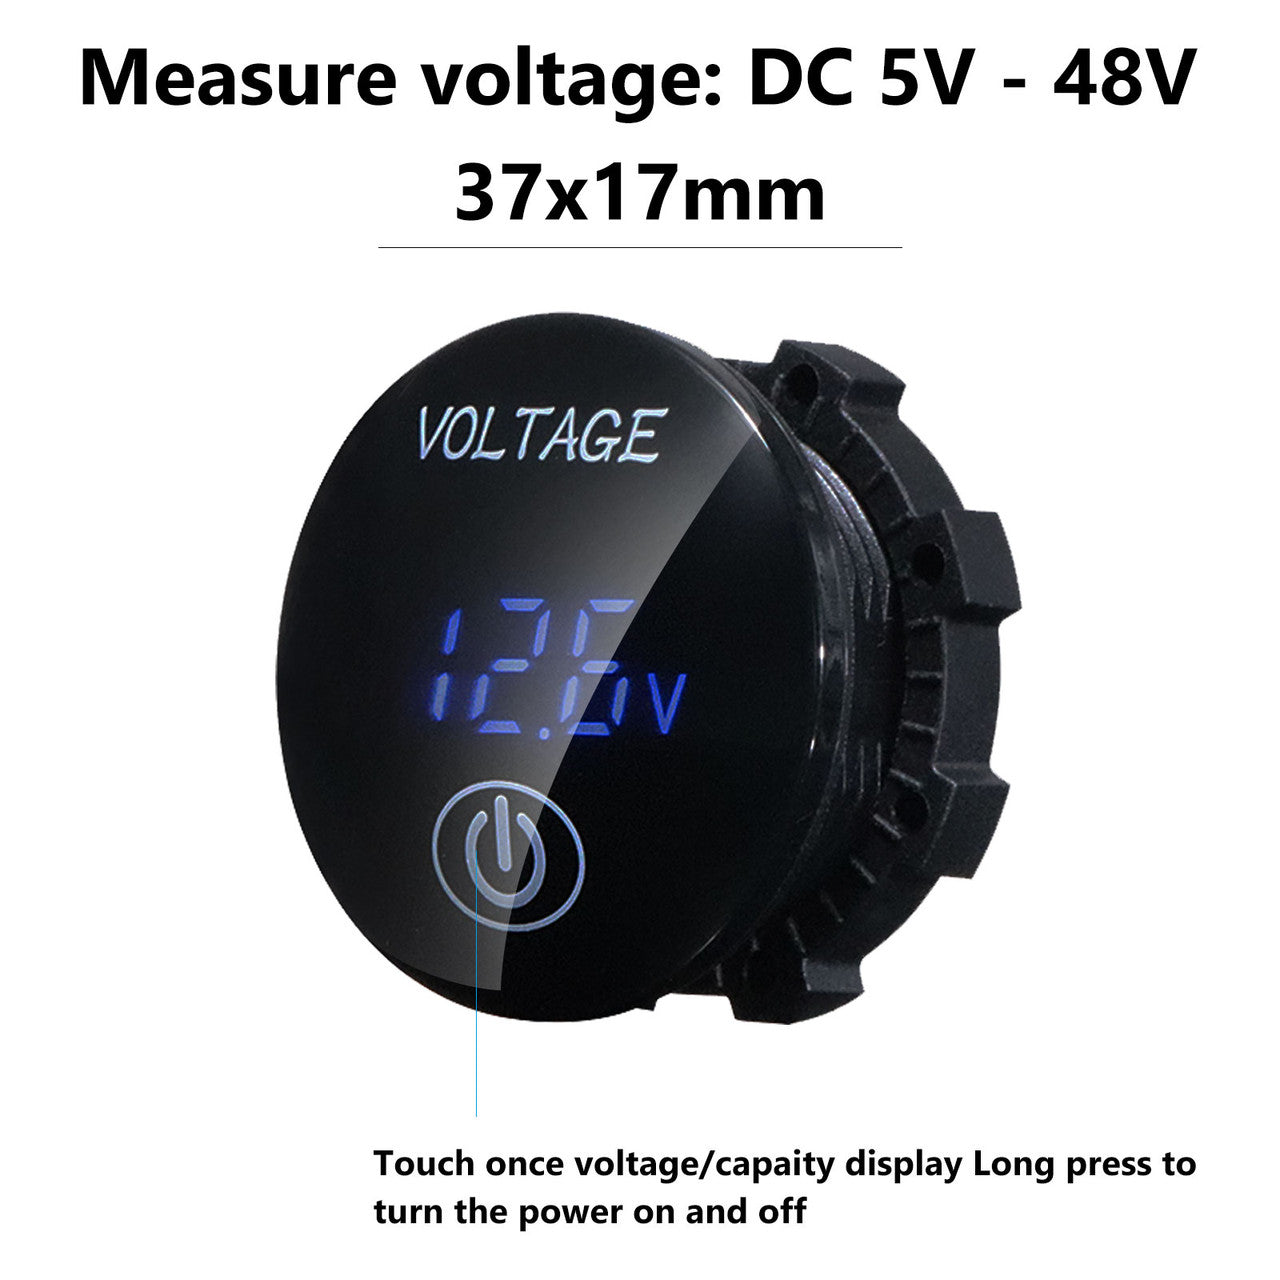 LED Digital Voltmeter, Car Motorcycle Waterproof LED Digital Panel Display Voltmeter Voltage Volt Meter Gauge DC 12V-24V / 5V-48V, Blue